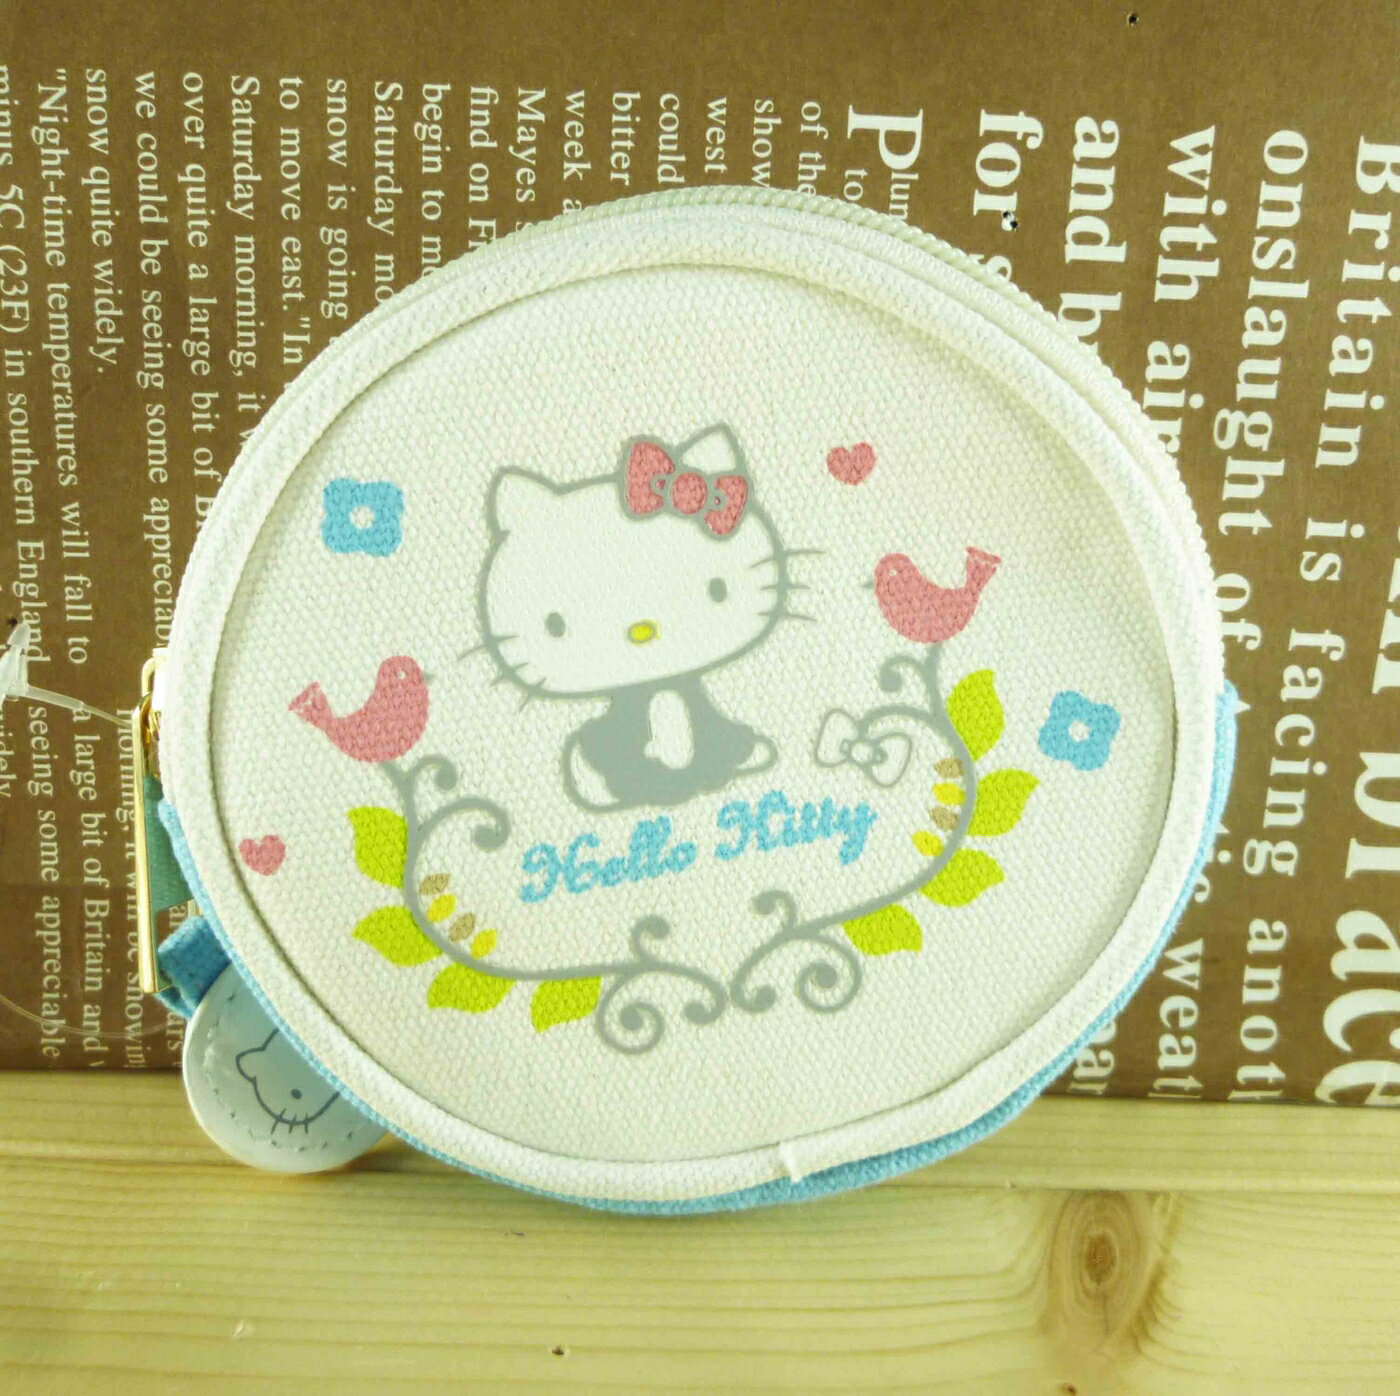 【震撼精品百貨】Hello Kitty 凱蒂貓-圓零錢包-藍北歐 震撼日式精品百貨